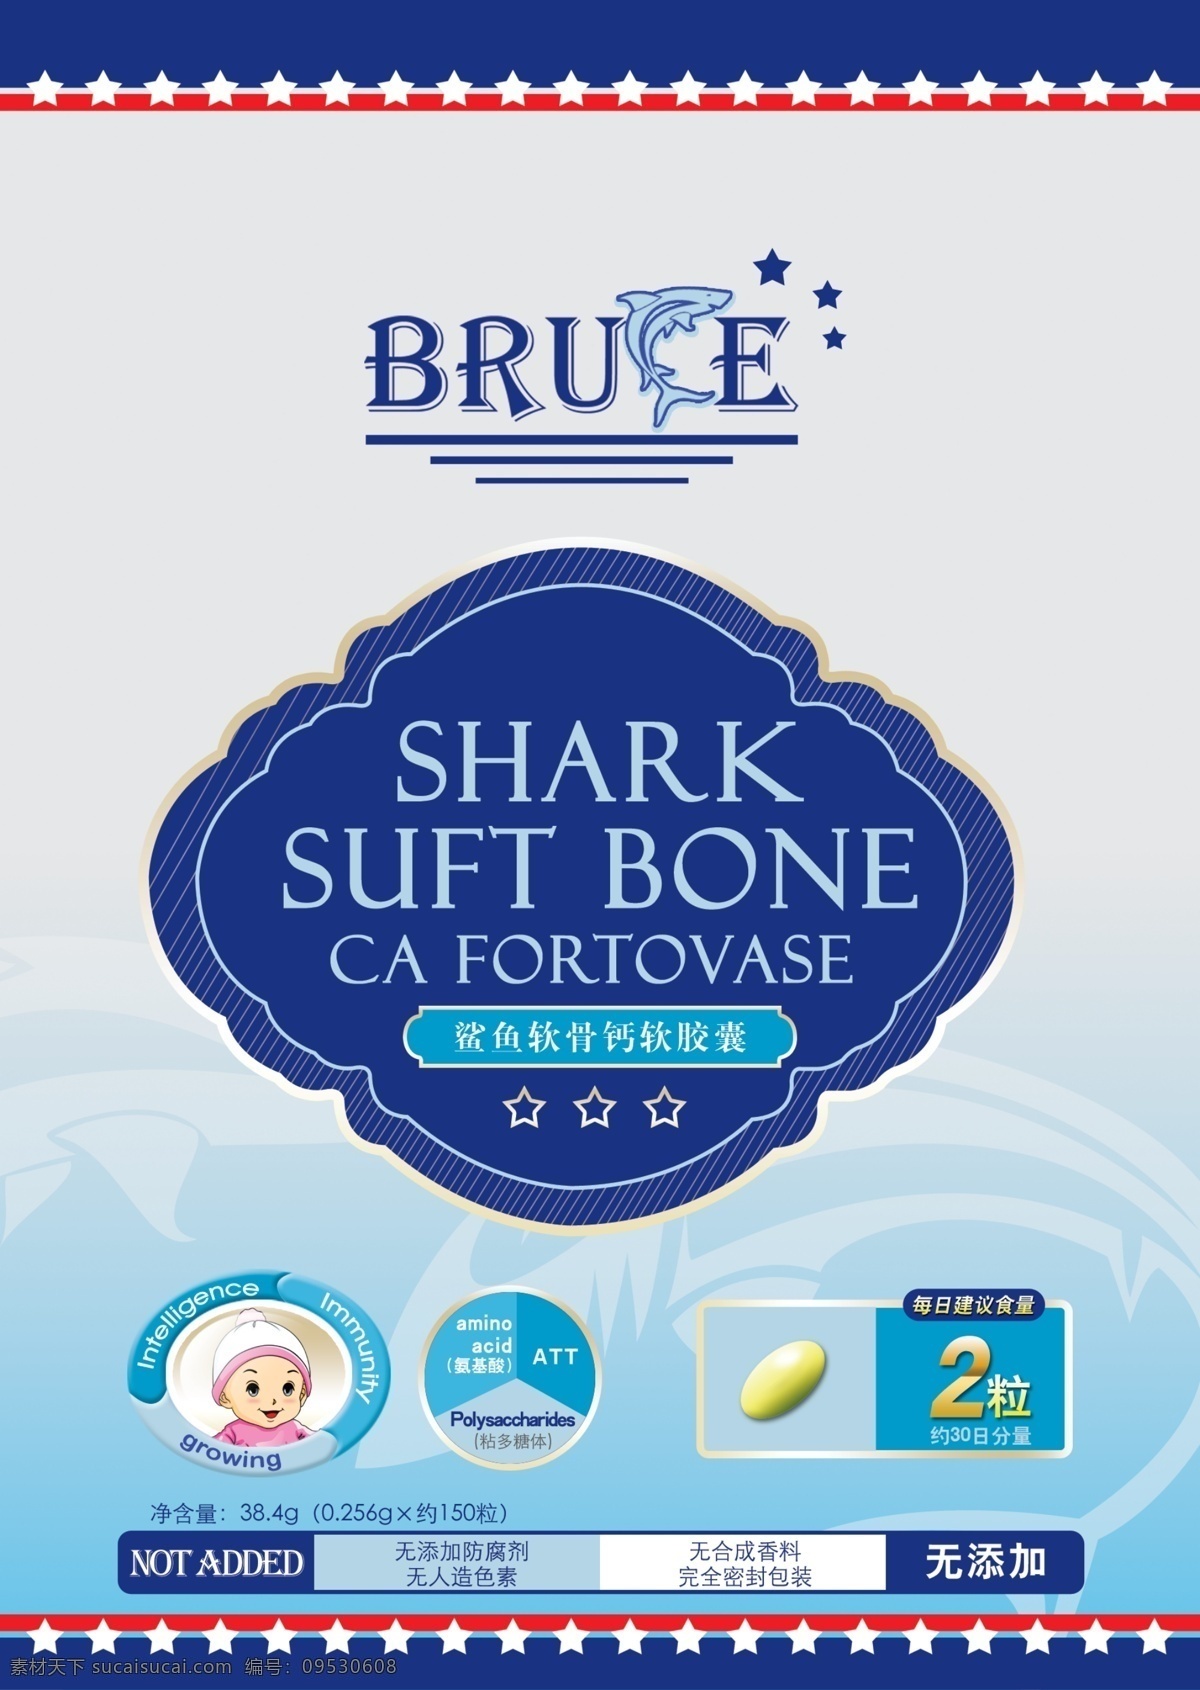 鲨鱼 软骨 钙 软胶囊 包装 保健品 儿童钙片 青色 天蓝色